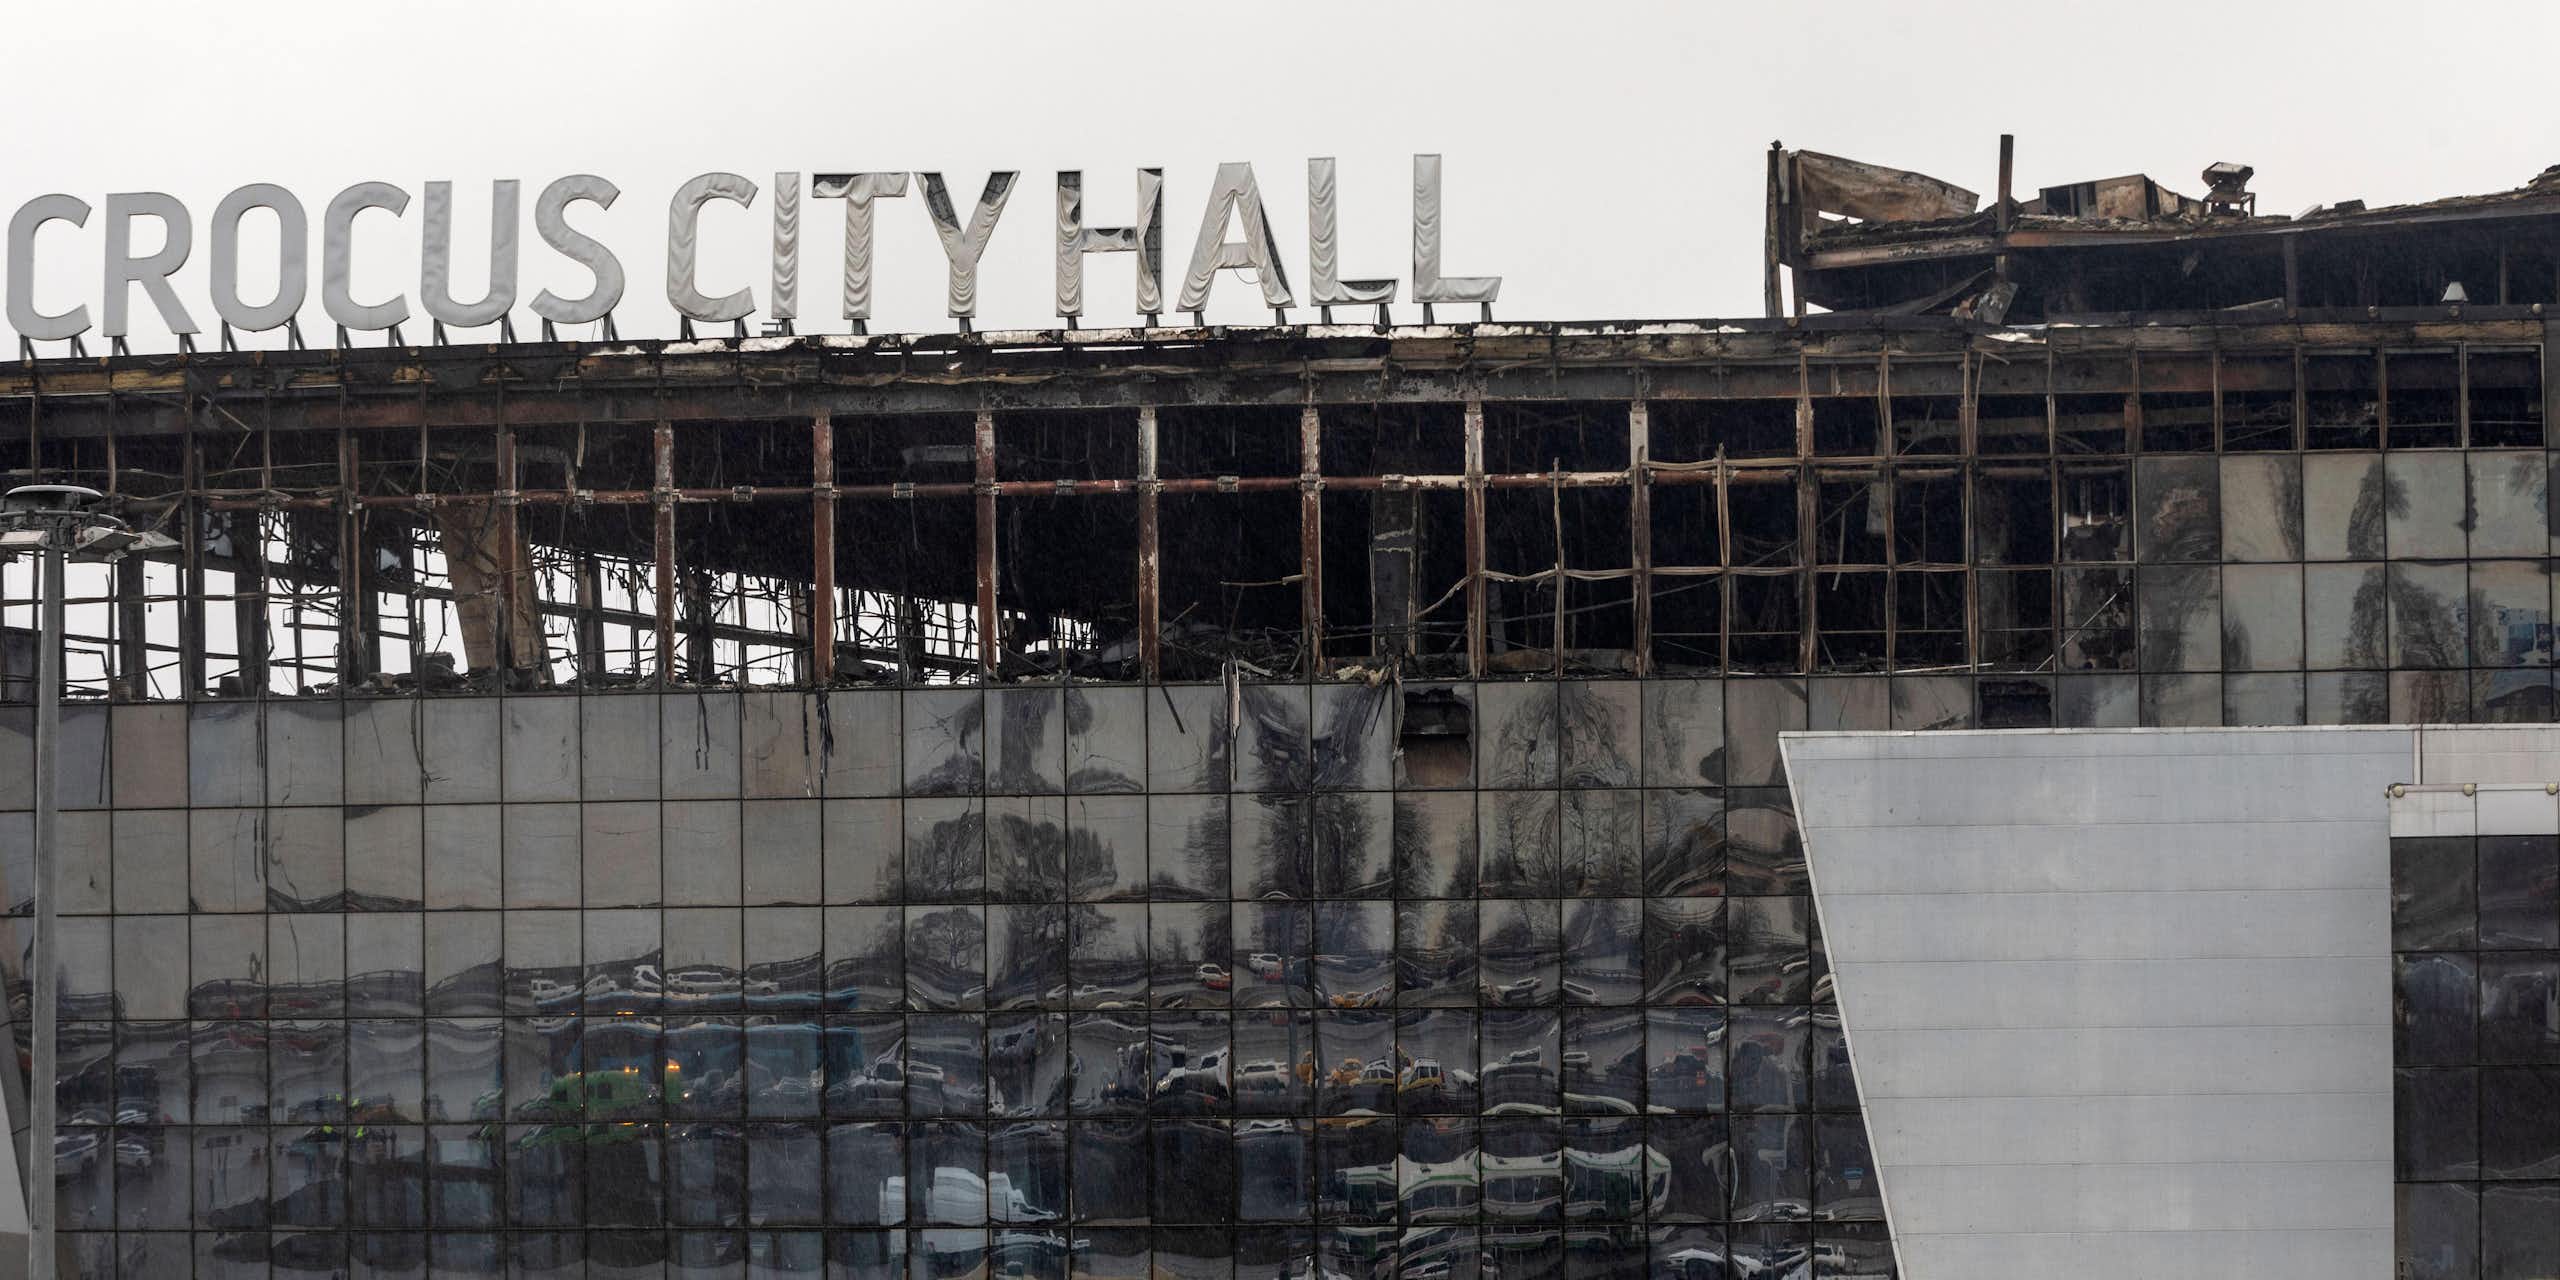 The damaged Crocus City Hall, near Moscow.